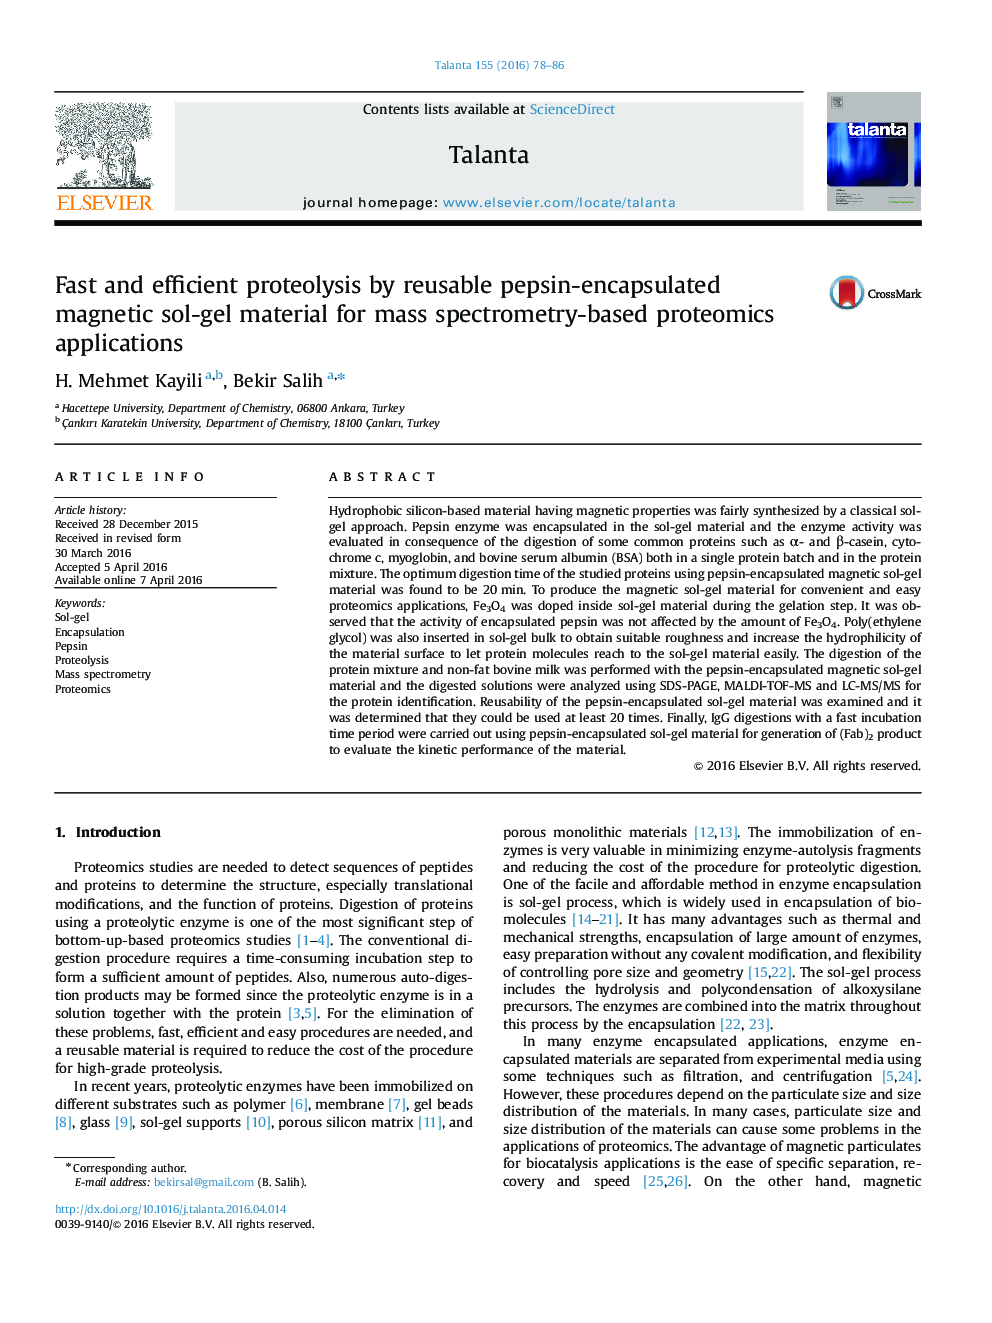 پروتئولیز سریع و کارآمد با استفاده از مواد سلول ژل مغناطیسی پپسین قابل استفاده مجدد برای برنامه های پروتئومیک مبتنی بر طیف سنجی جرمی 